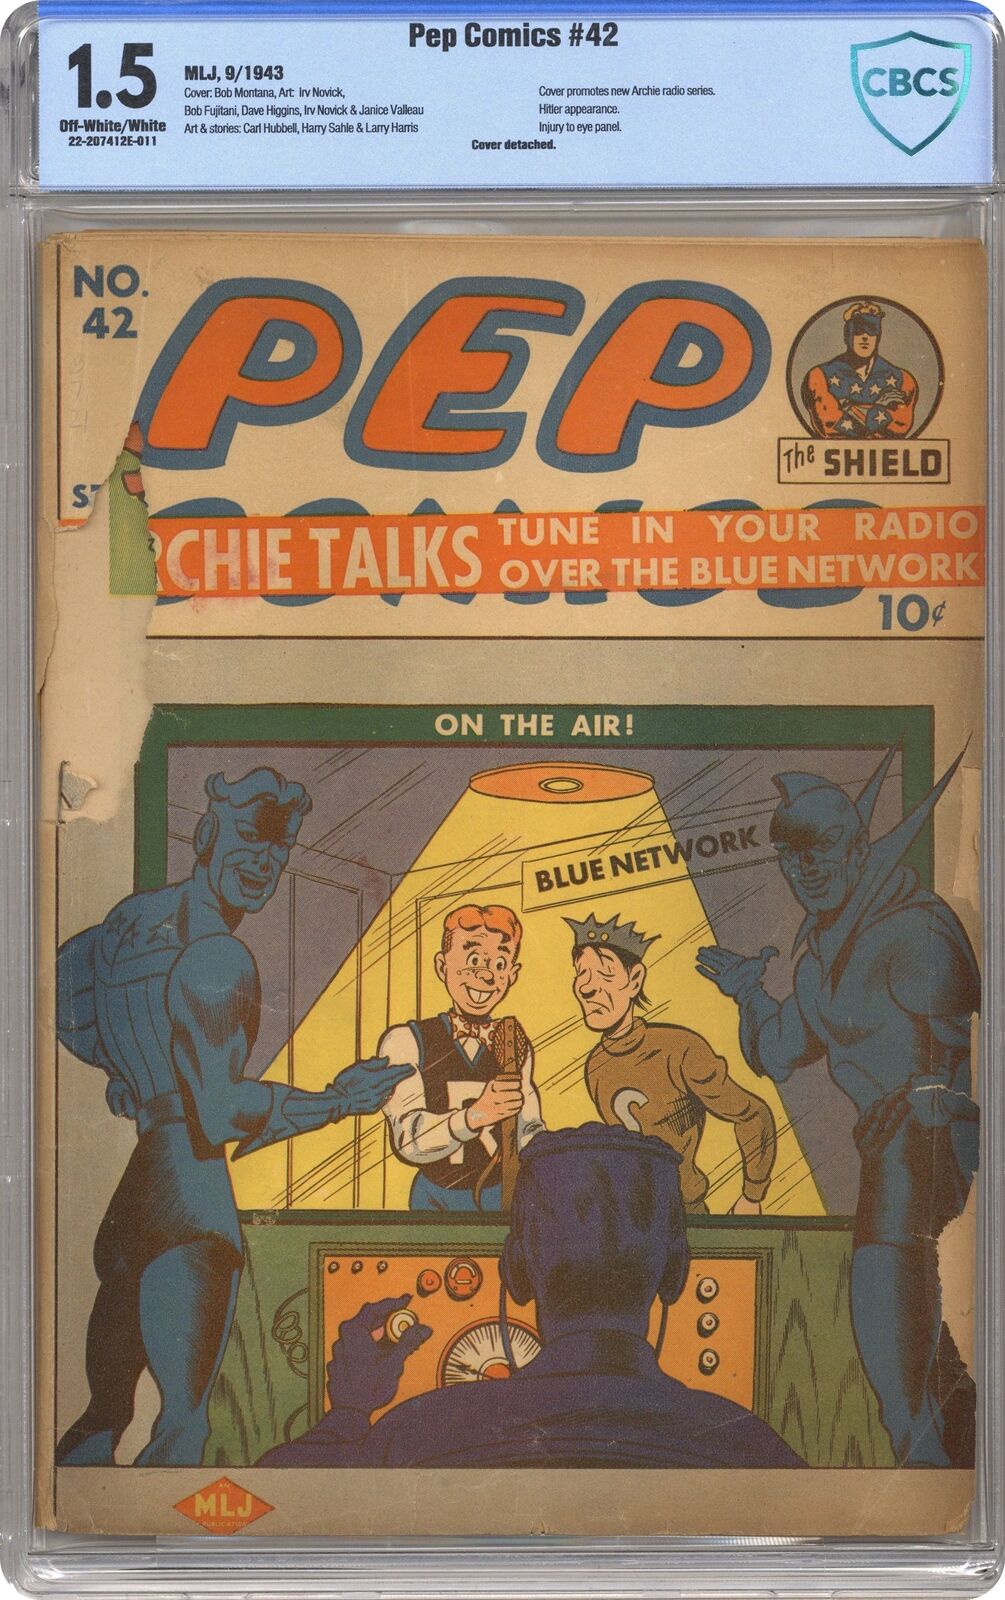 Pep Comics #42 CBCS 1.5 1943 22-207412E-011